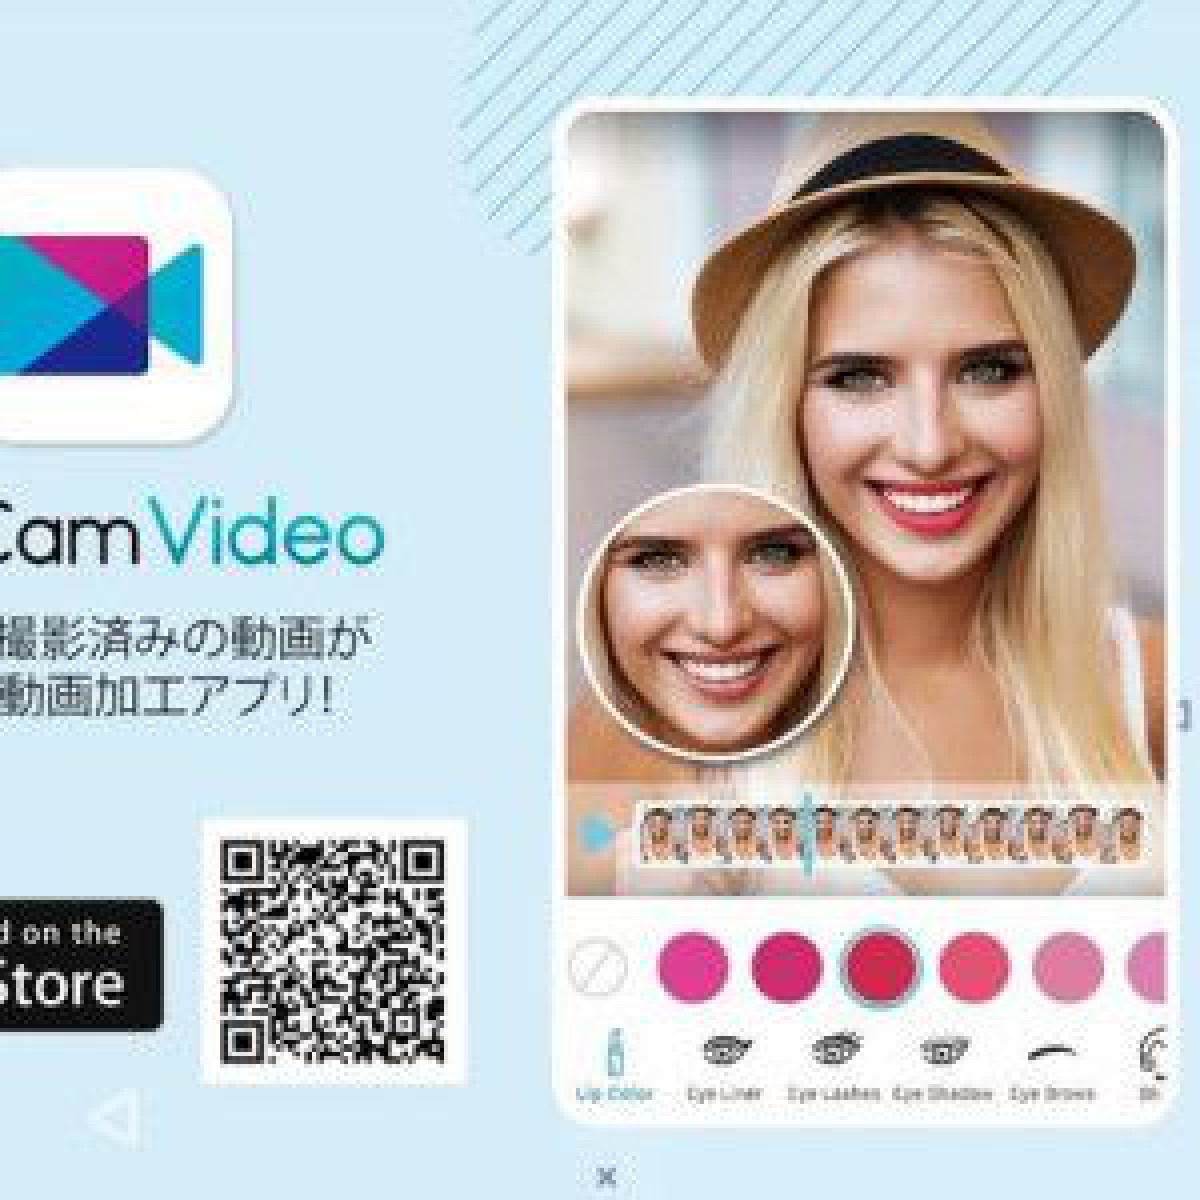 自撮り動画にバーチャルメイクや美顔加工を施すことができるビューティーアプリが登場